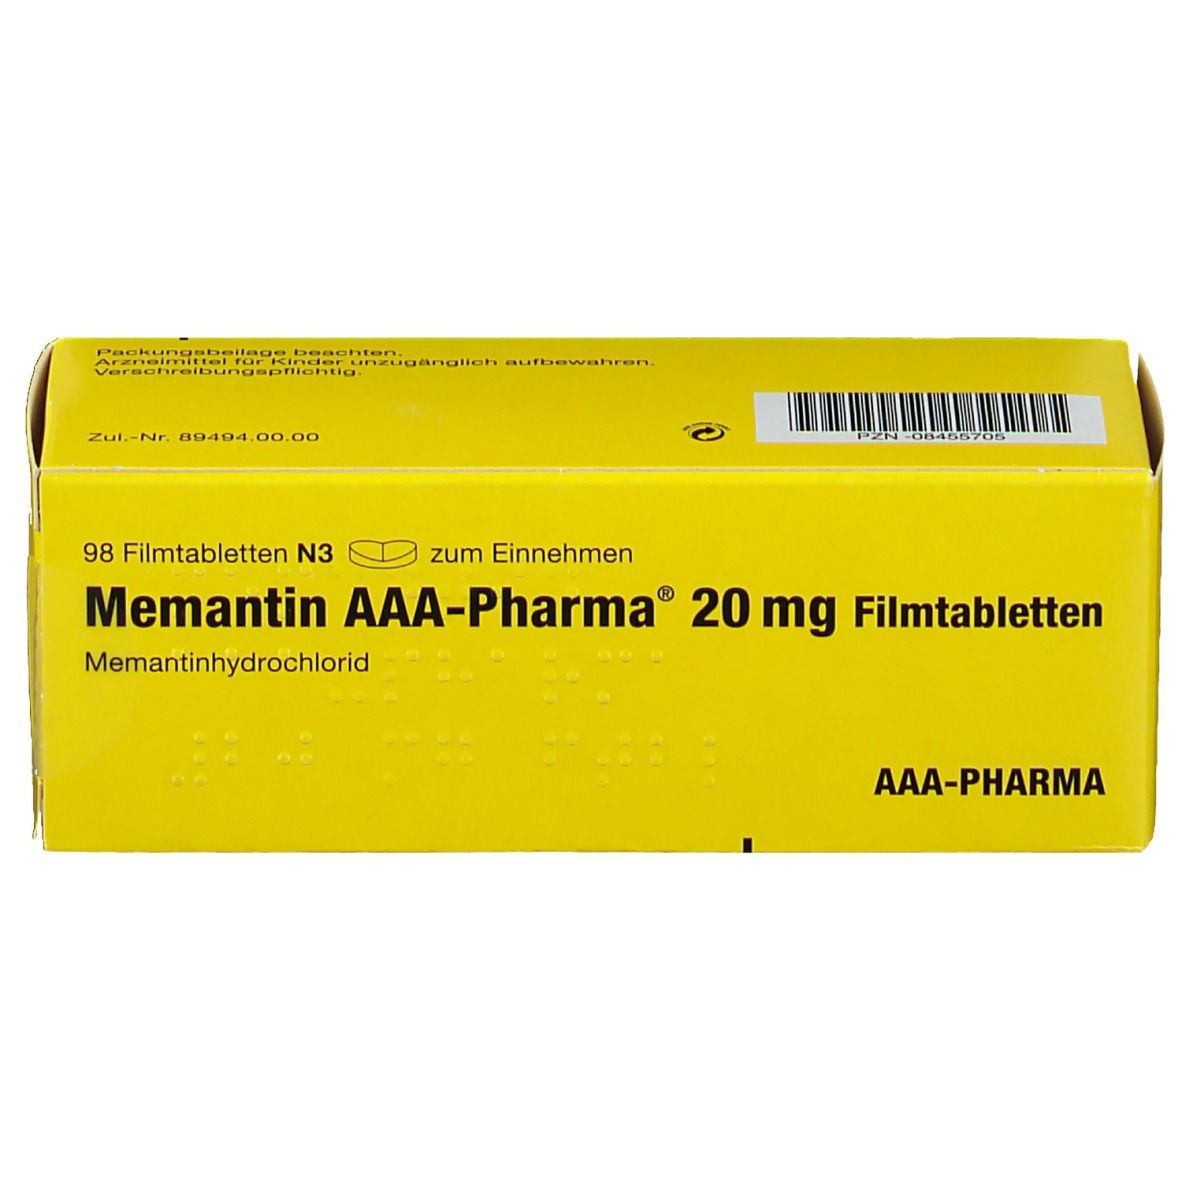 Memantin AAA®-Pharma 20Mg